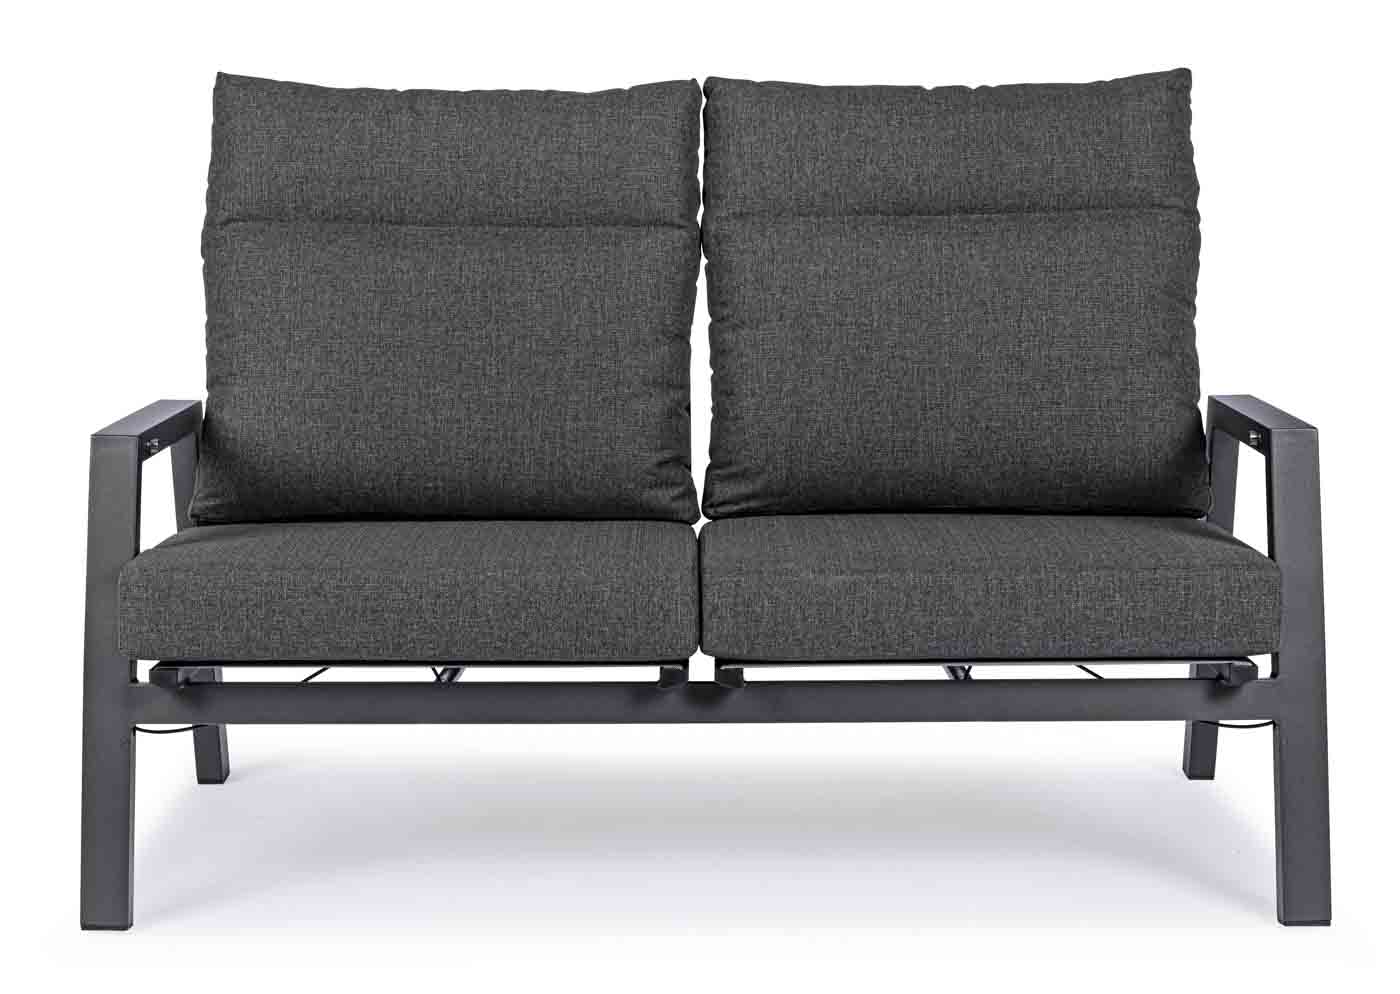 Unser 2,5 Sitzer Sofa Kledi hat verstellbare Rückenlehnen, die für den nötigen Komfort sorgen